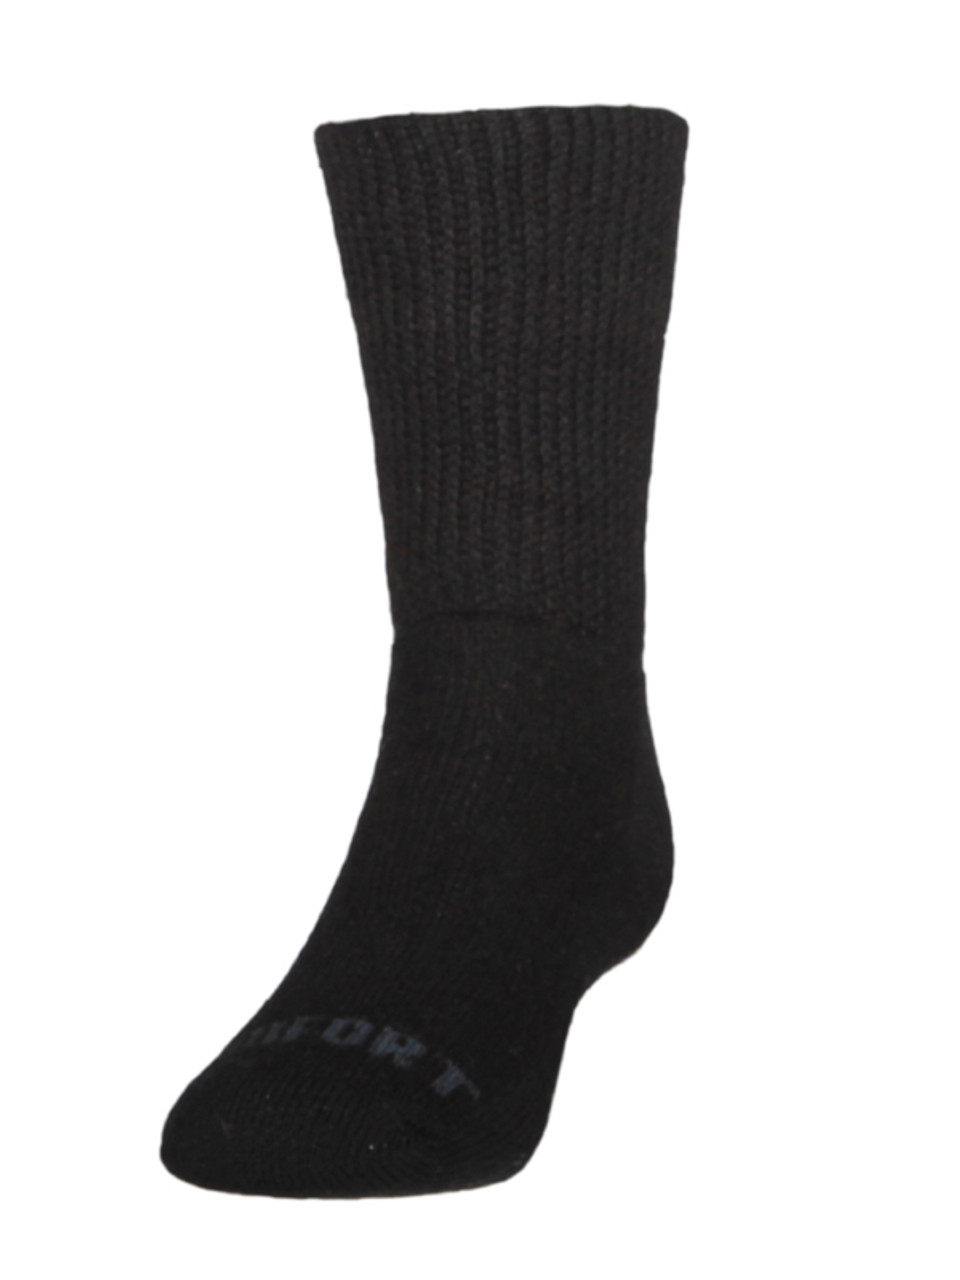 Comfort Socks - Merino and Possum Comfort Top Socks | Women's